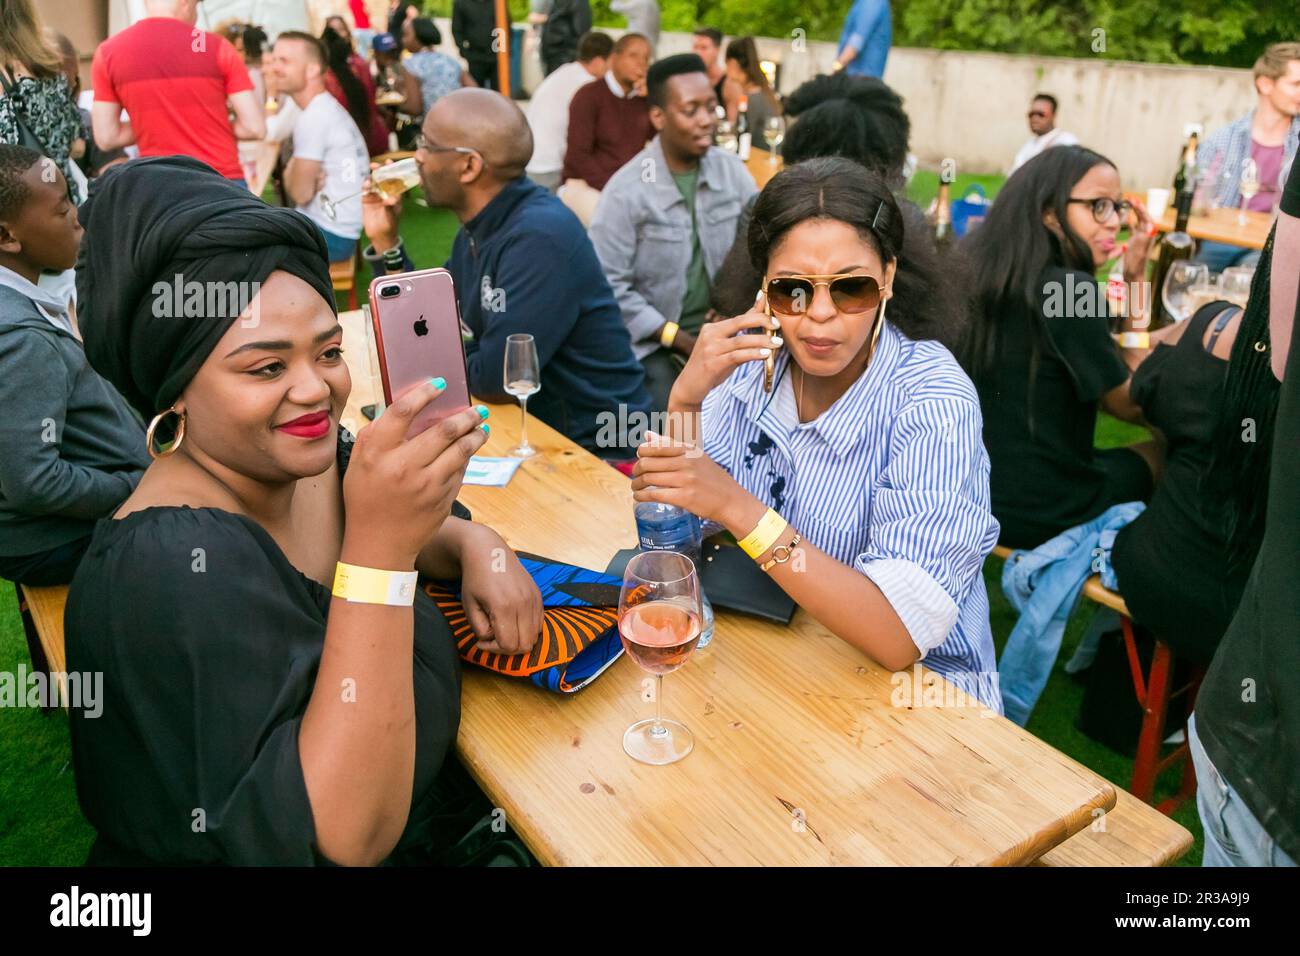 Johannesburgo, Sudáfrica - 14 de octubre 2017: Diversos amigos de comer, beber y disfrutar de un día en una feria de alimentos y vinos Foto de stock